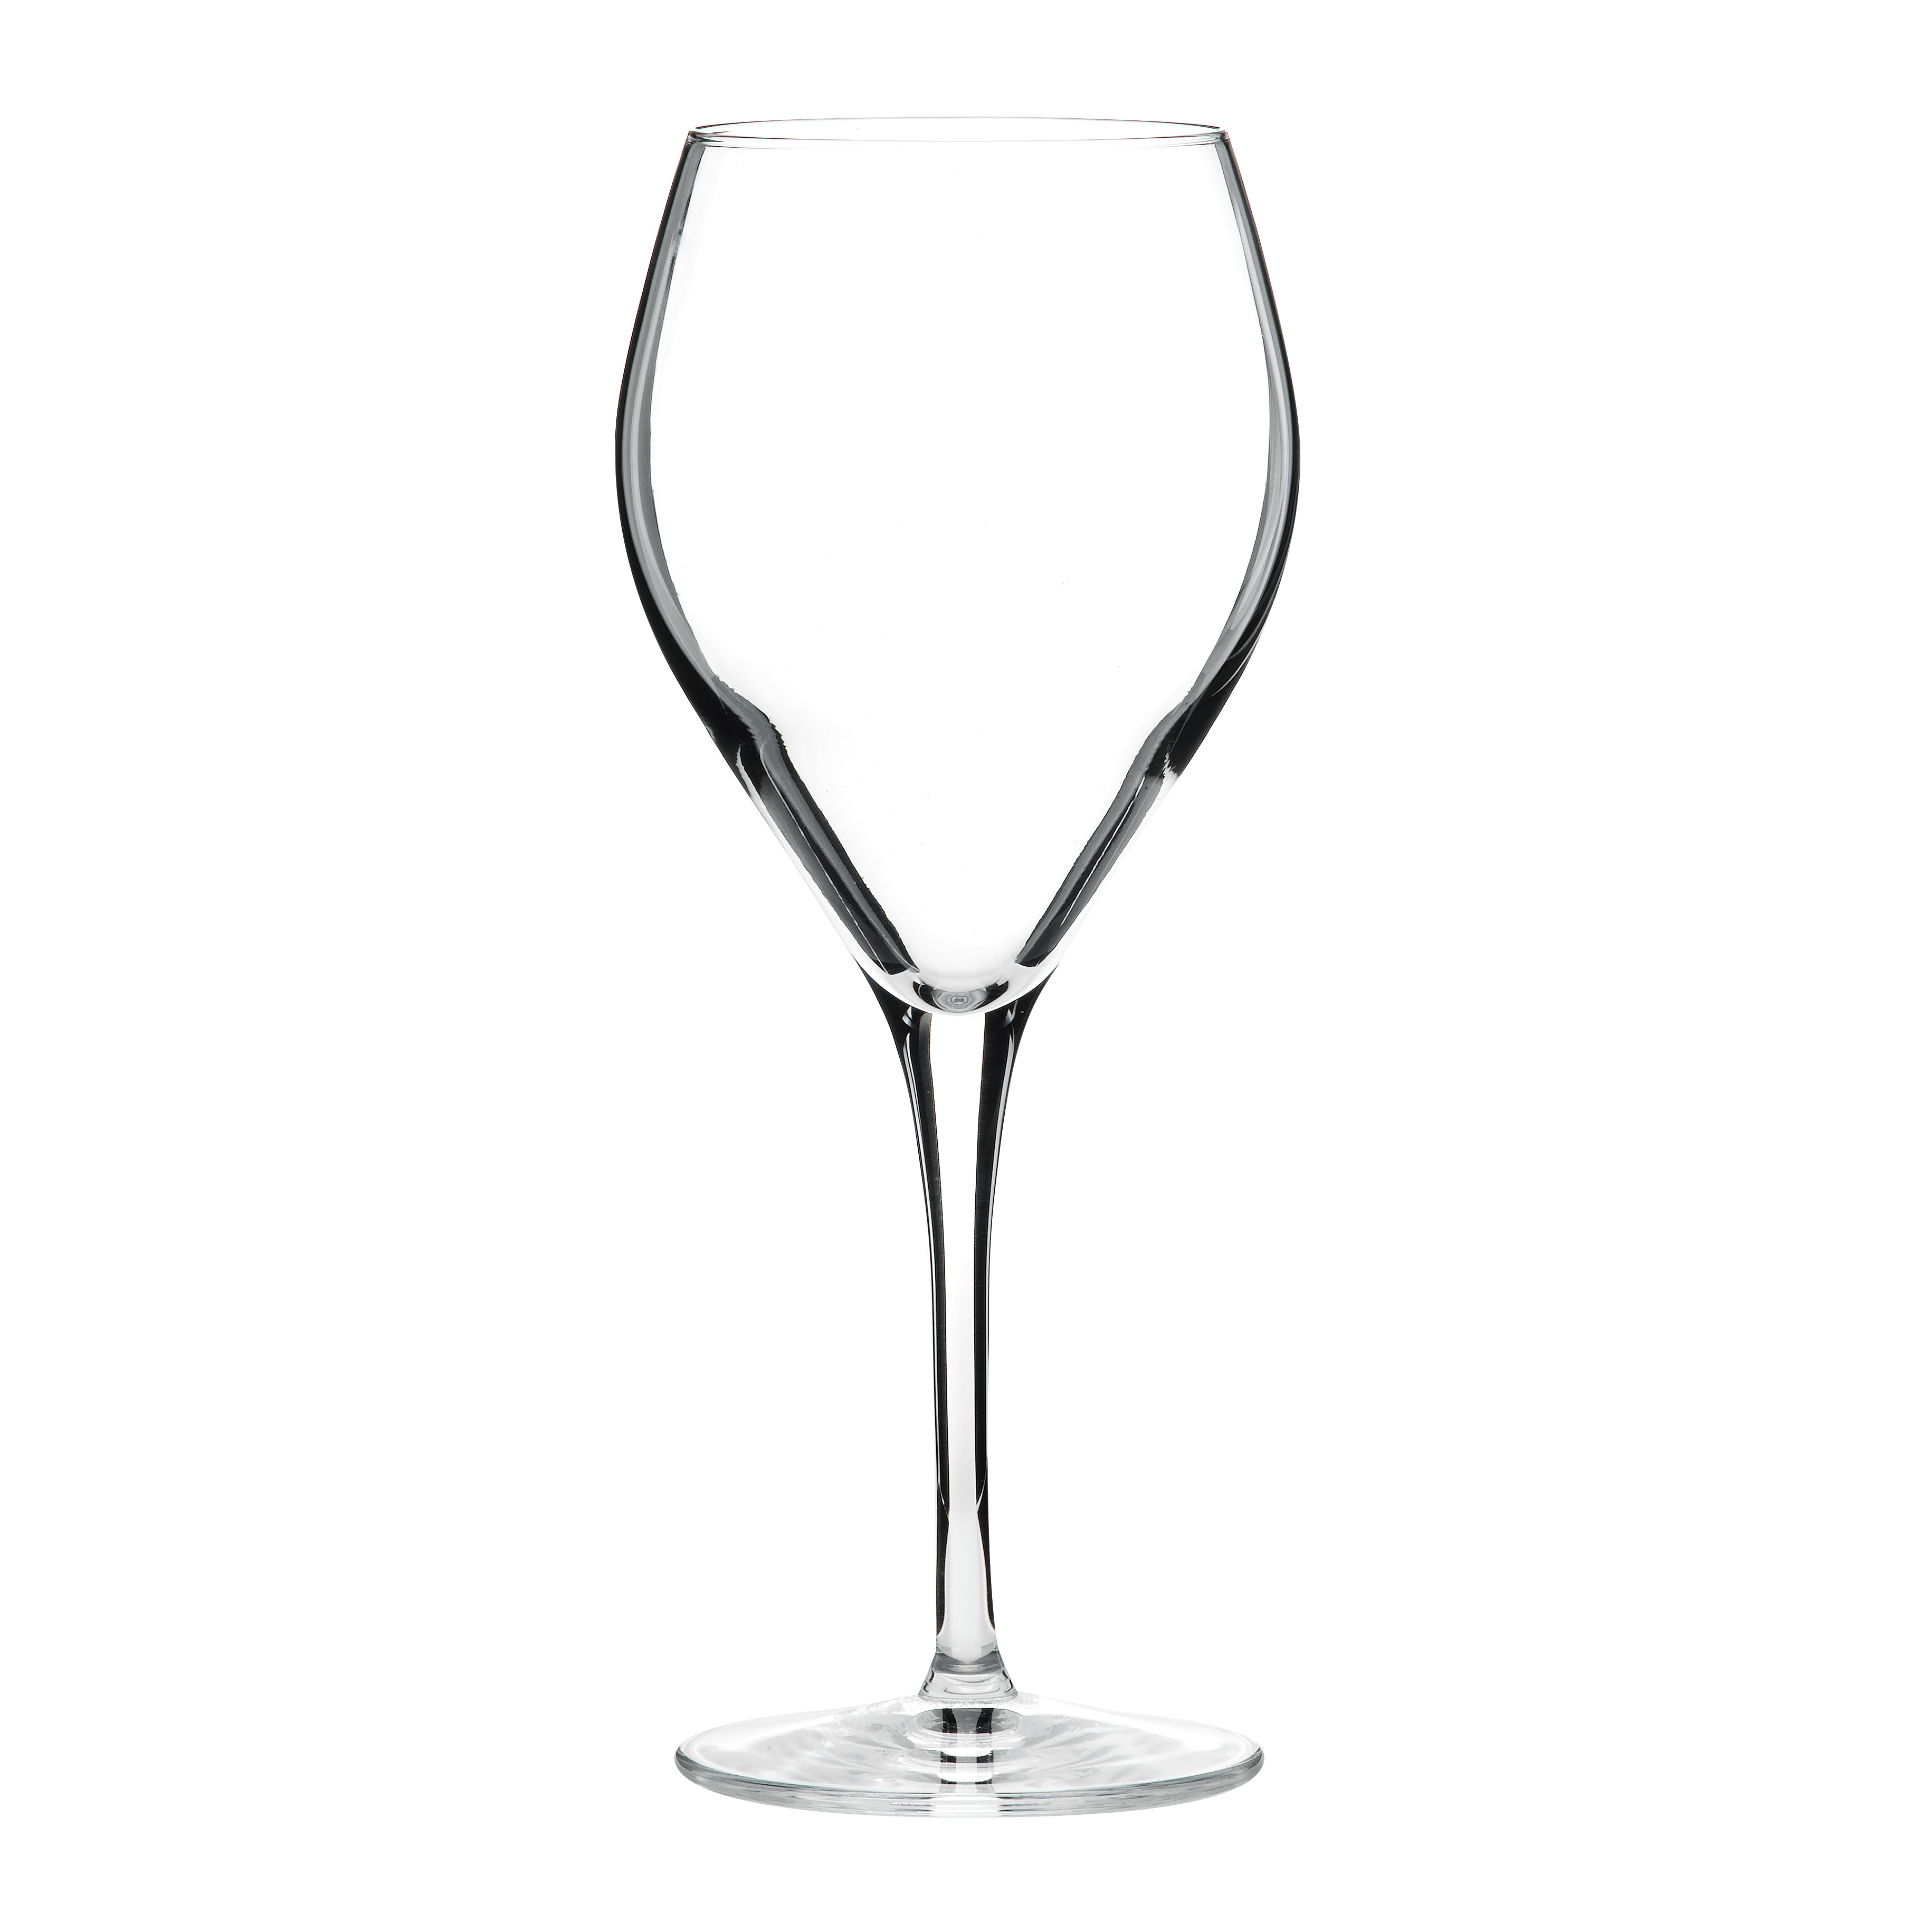 Atelier Prestige Riesling Wine Glasses 15.75oz / 45cl